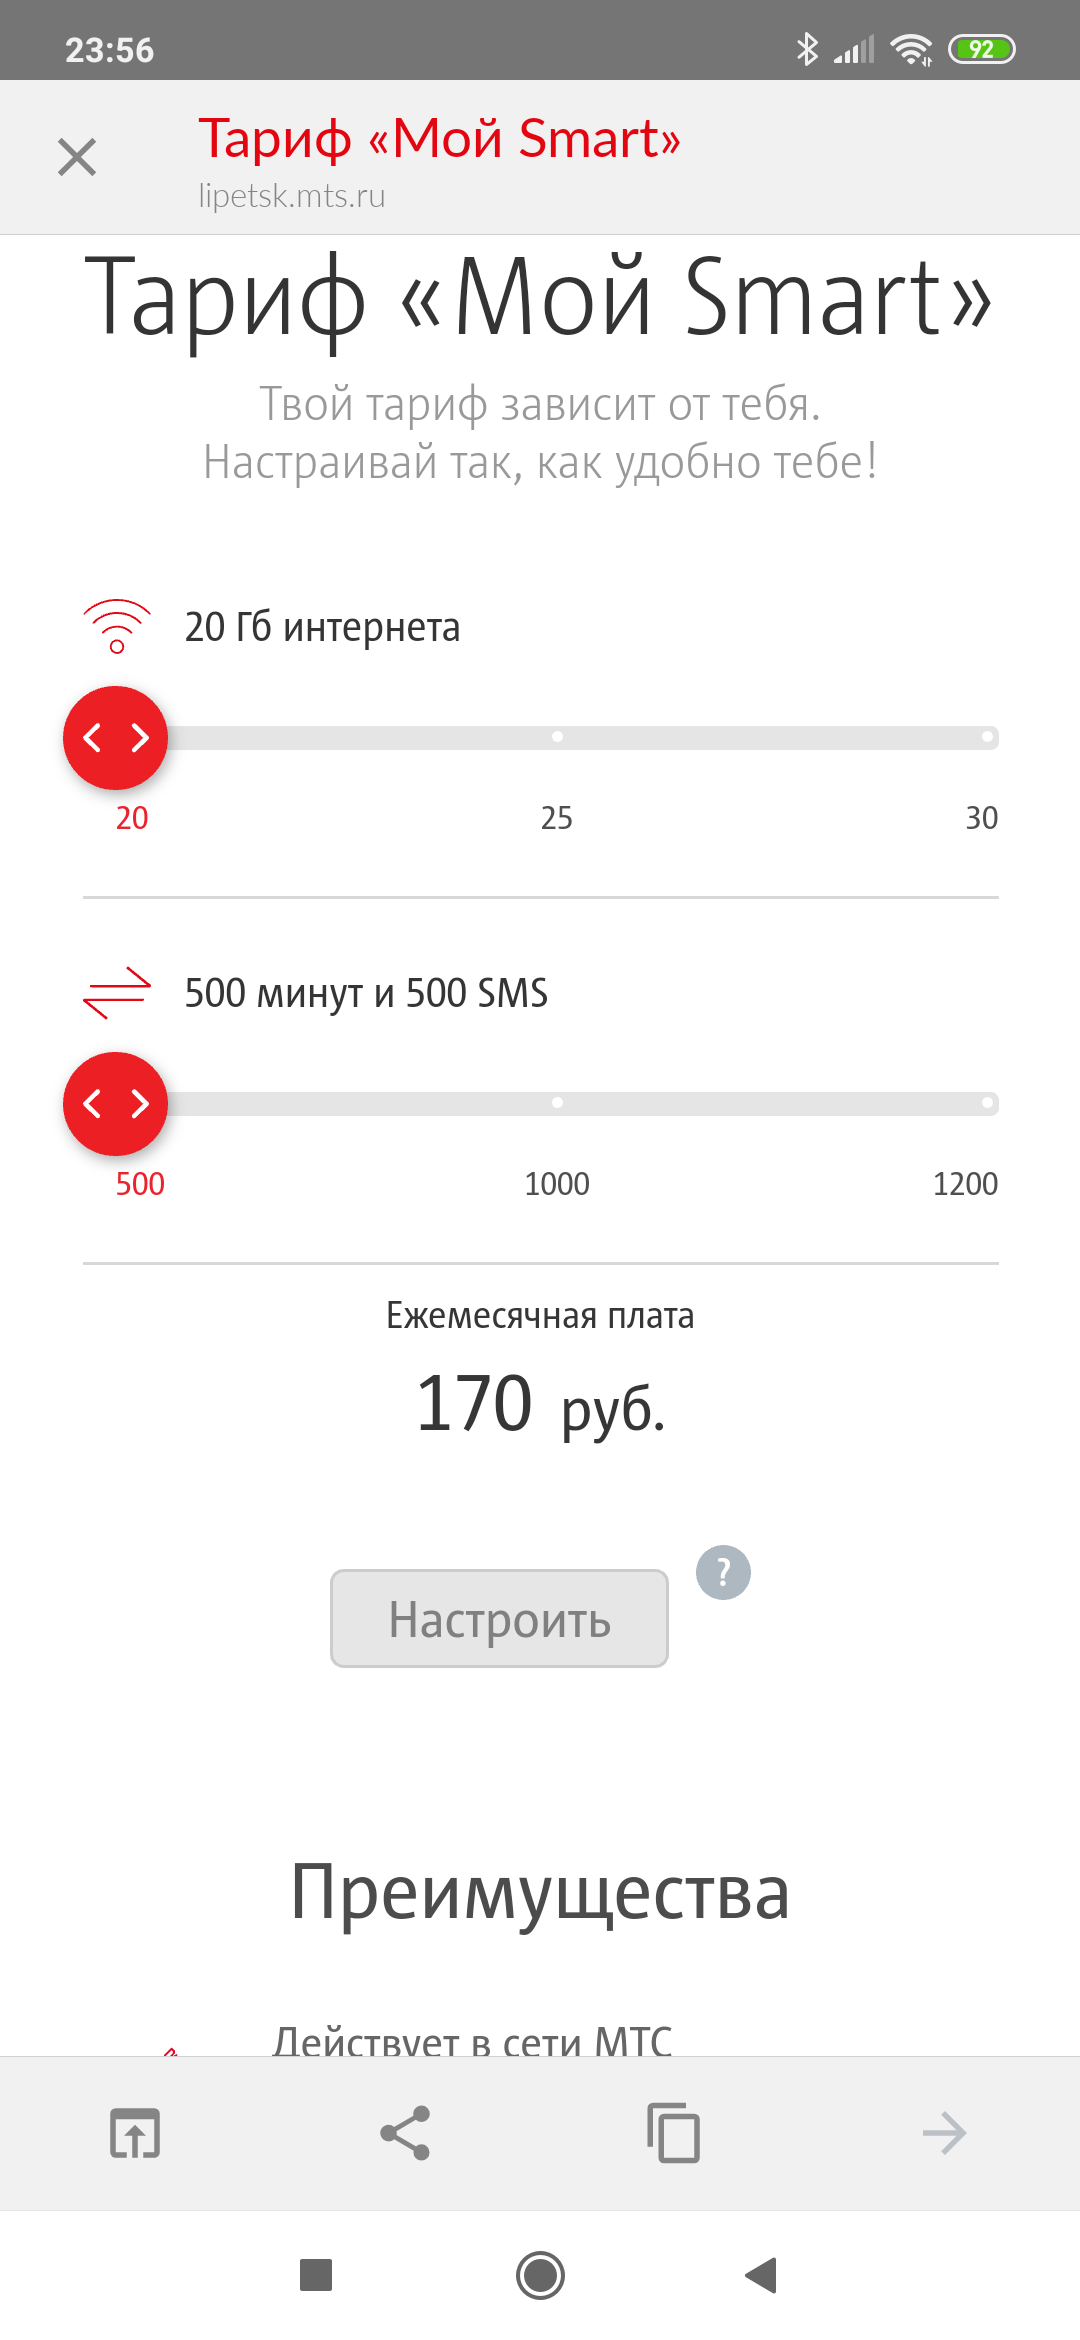 Мтс смарт 250 рублей